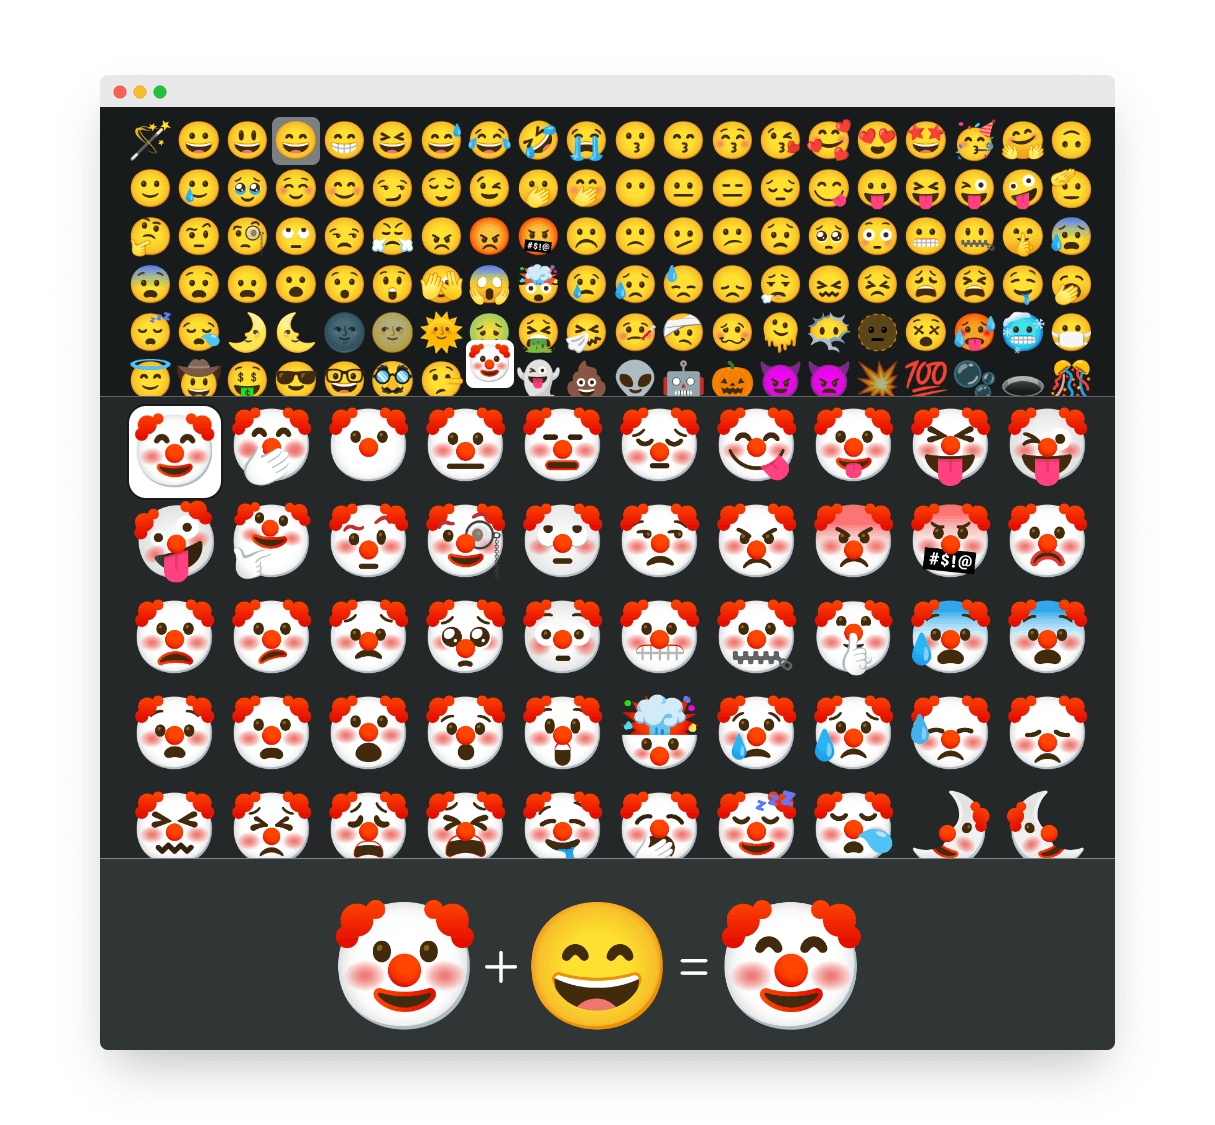 emoji表情转换器图片